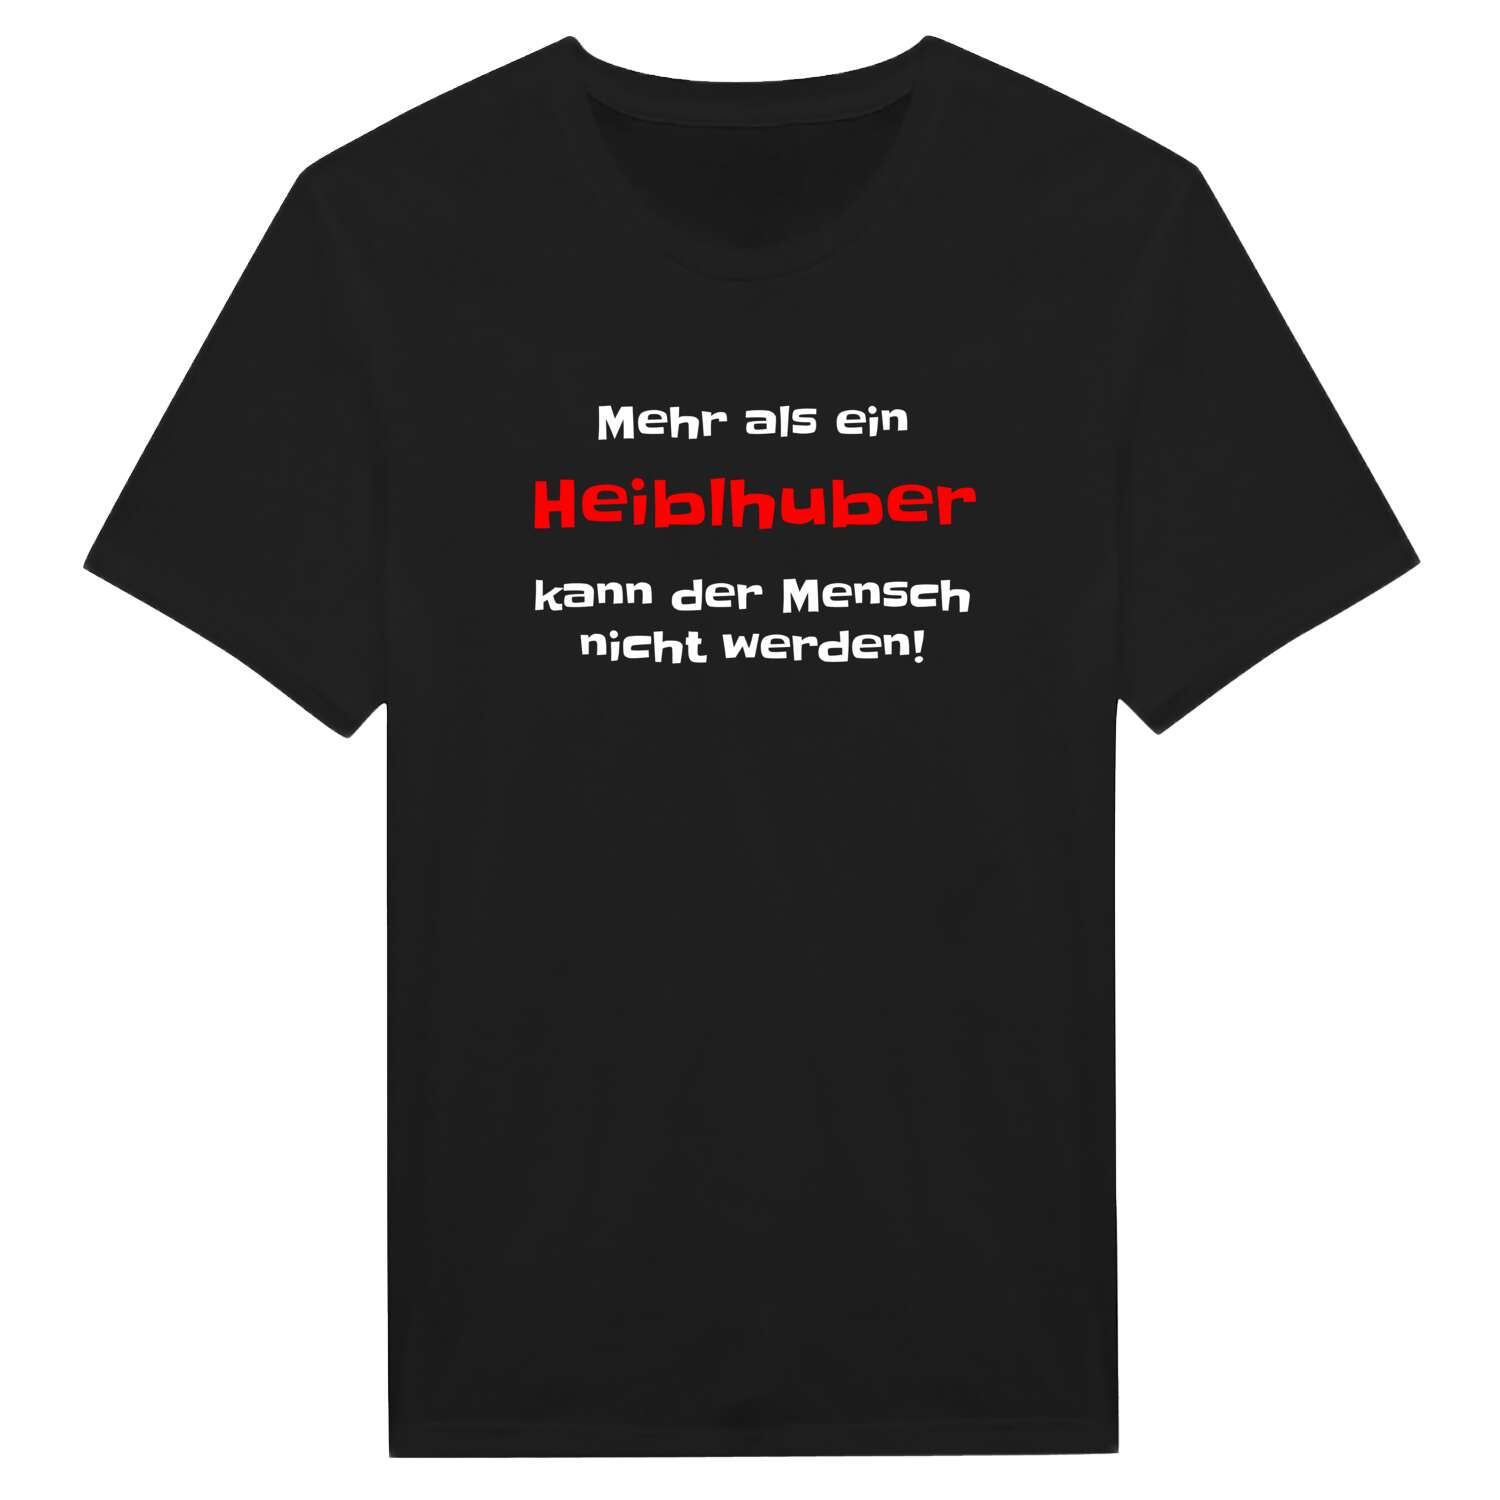 Heiblhub T-Shirt »Mehr als ein«